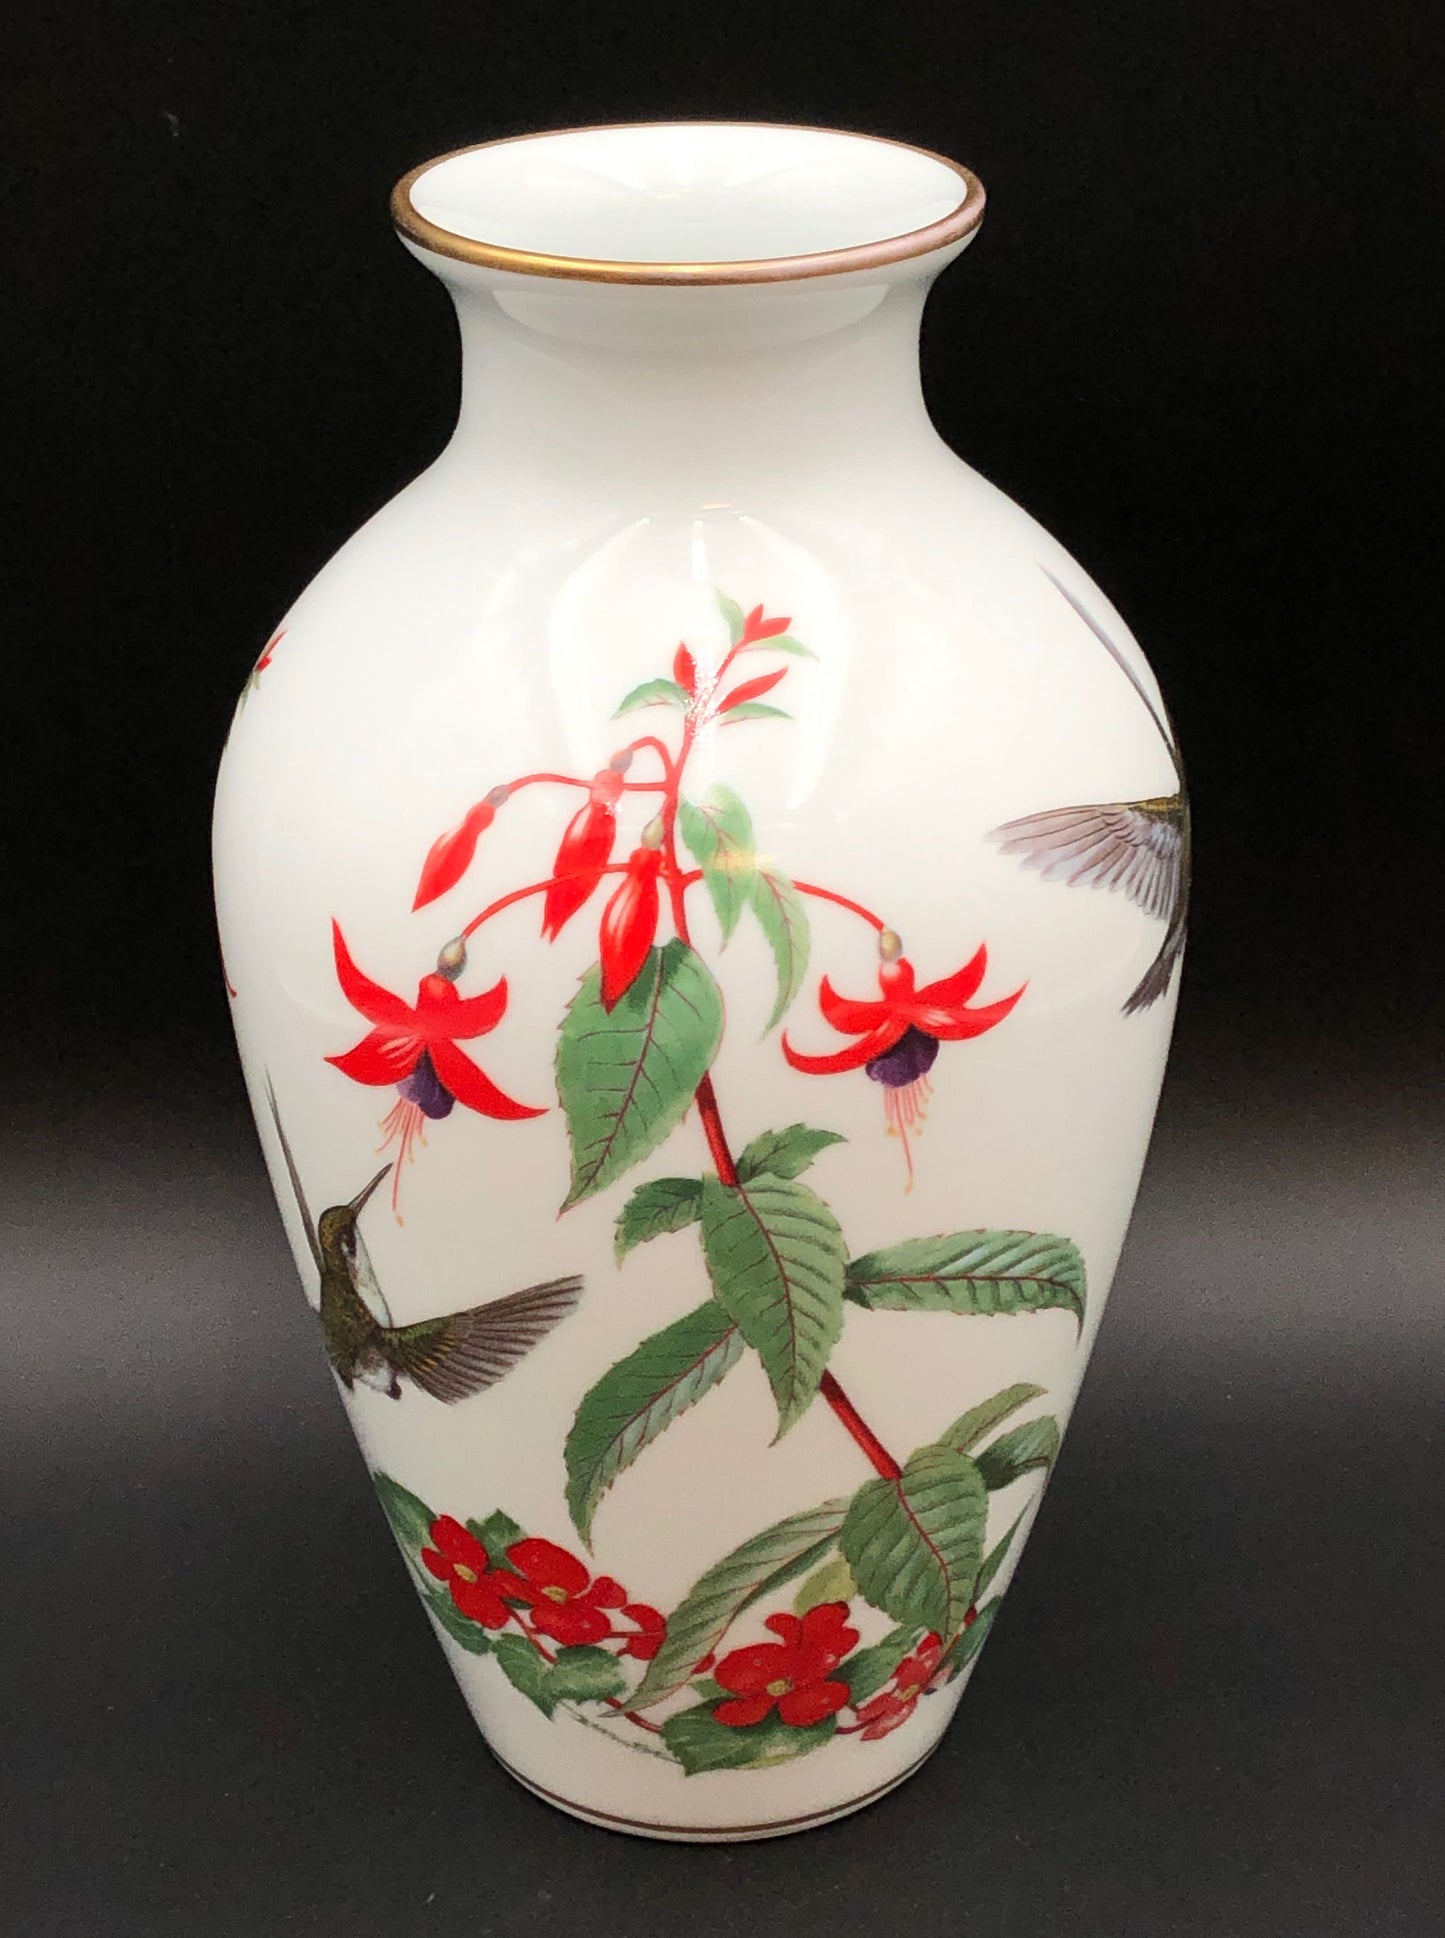 "The Garden Bird Vase" By Basil Ede - Franklin Porcelain 1981 Limited Edition